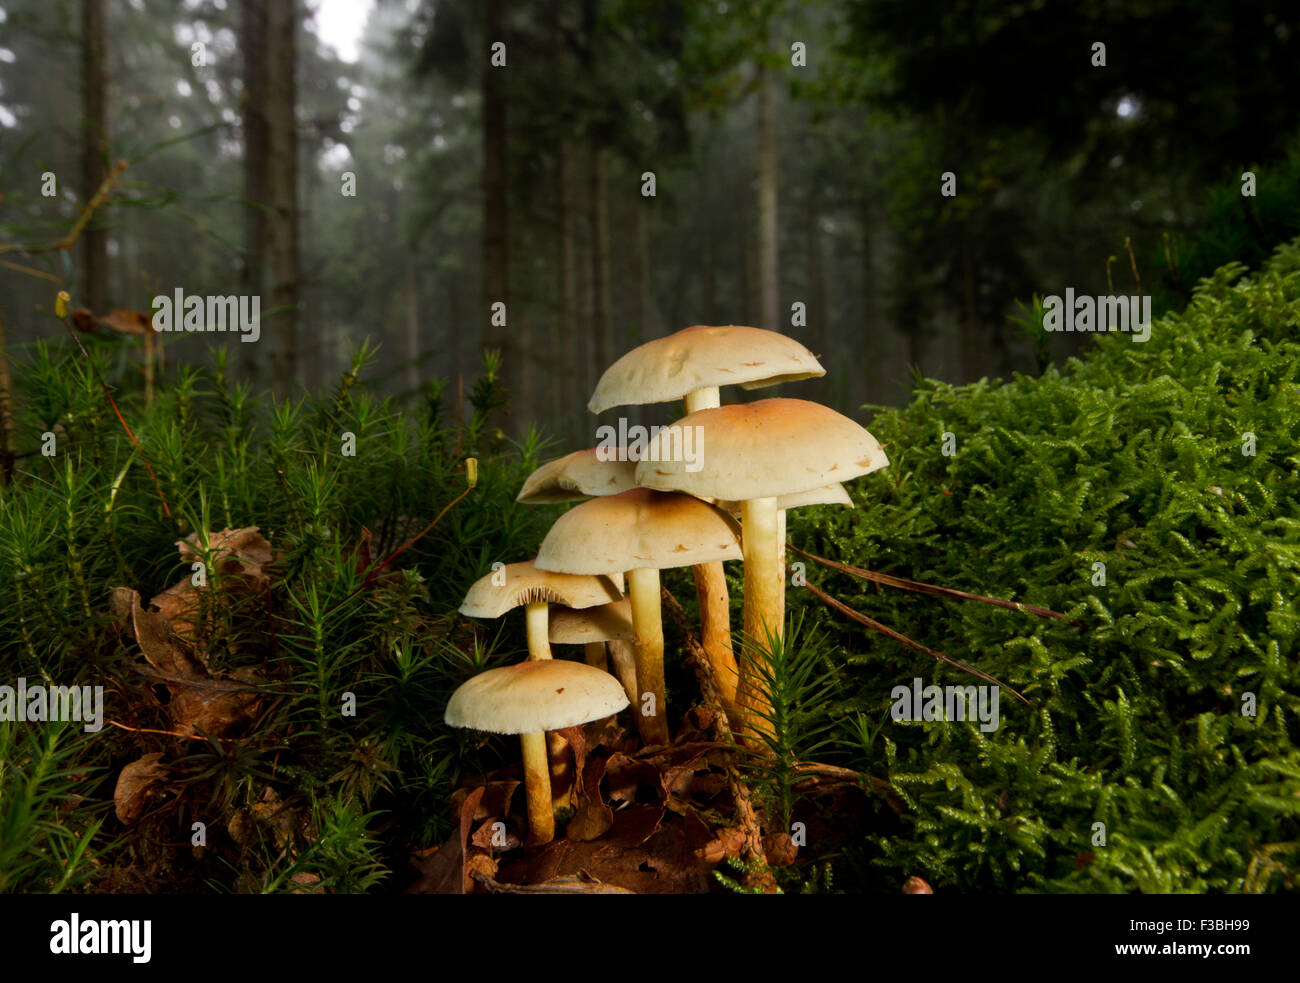 Ciuffo di zolfo (Hypholoma fasciculare), funghi velenosi in una foresta, tra Hypnum moss e comune Haircap moss Foto Stock